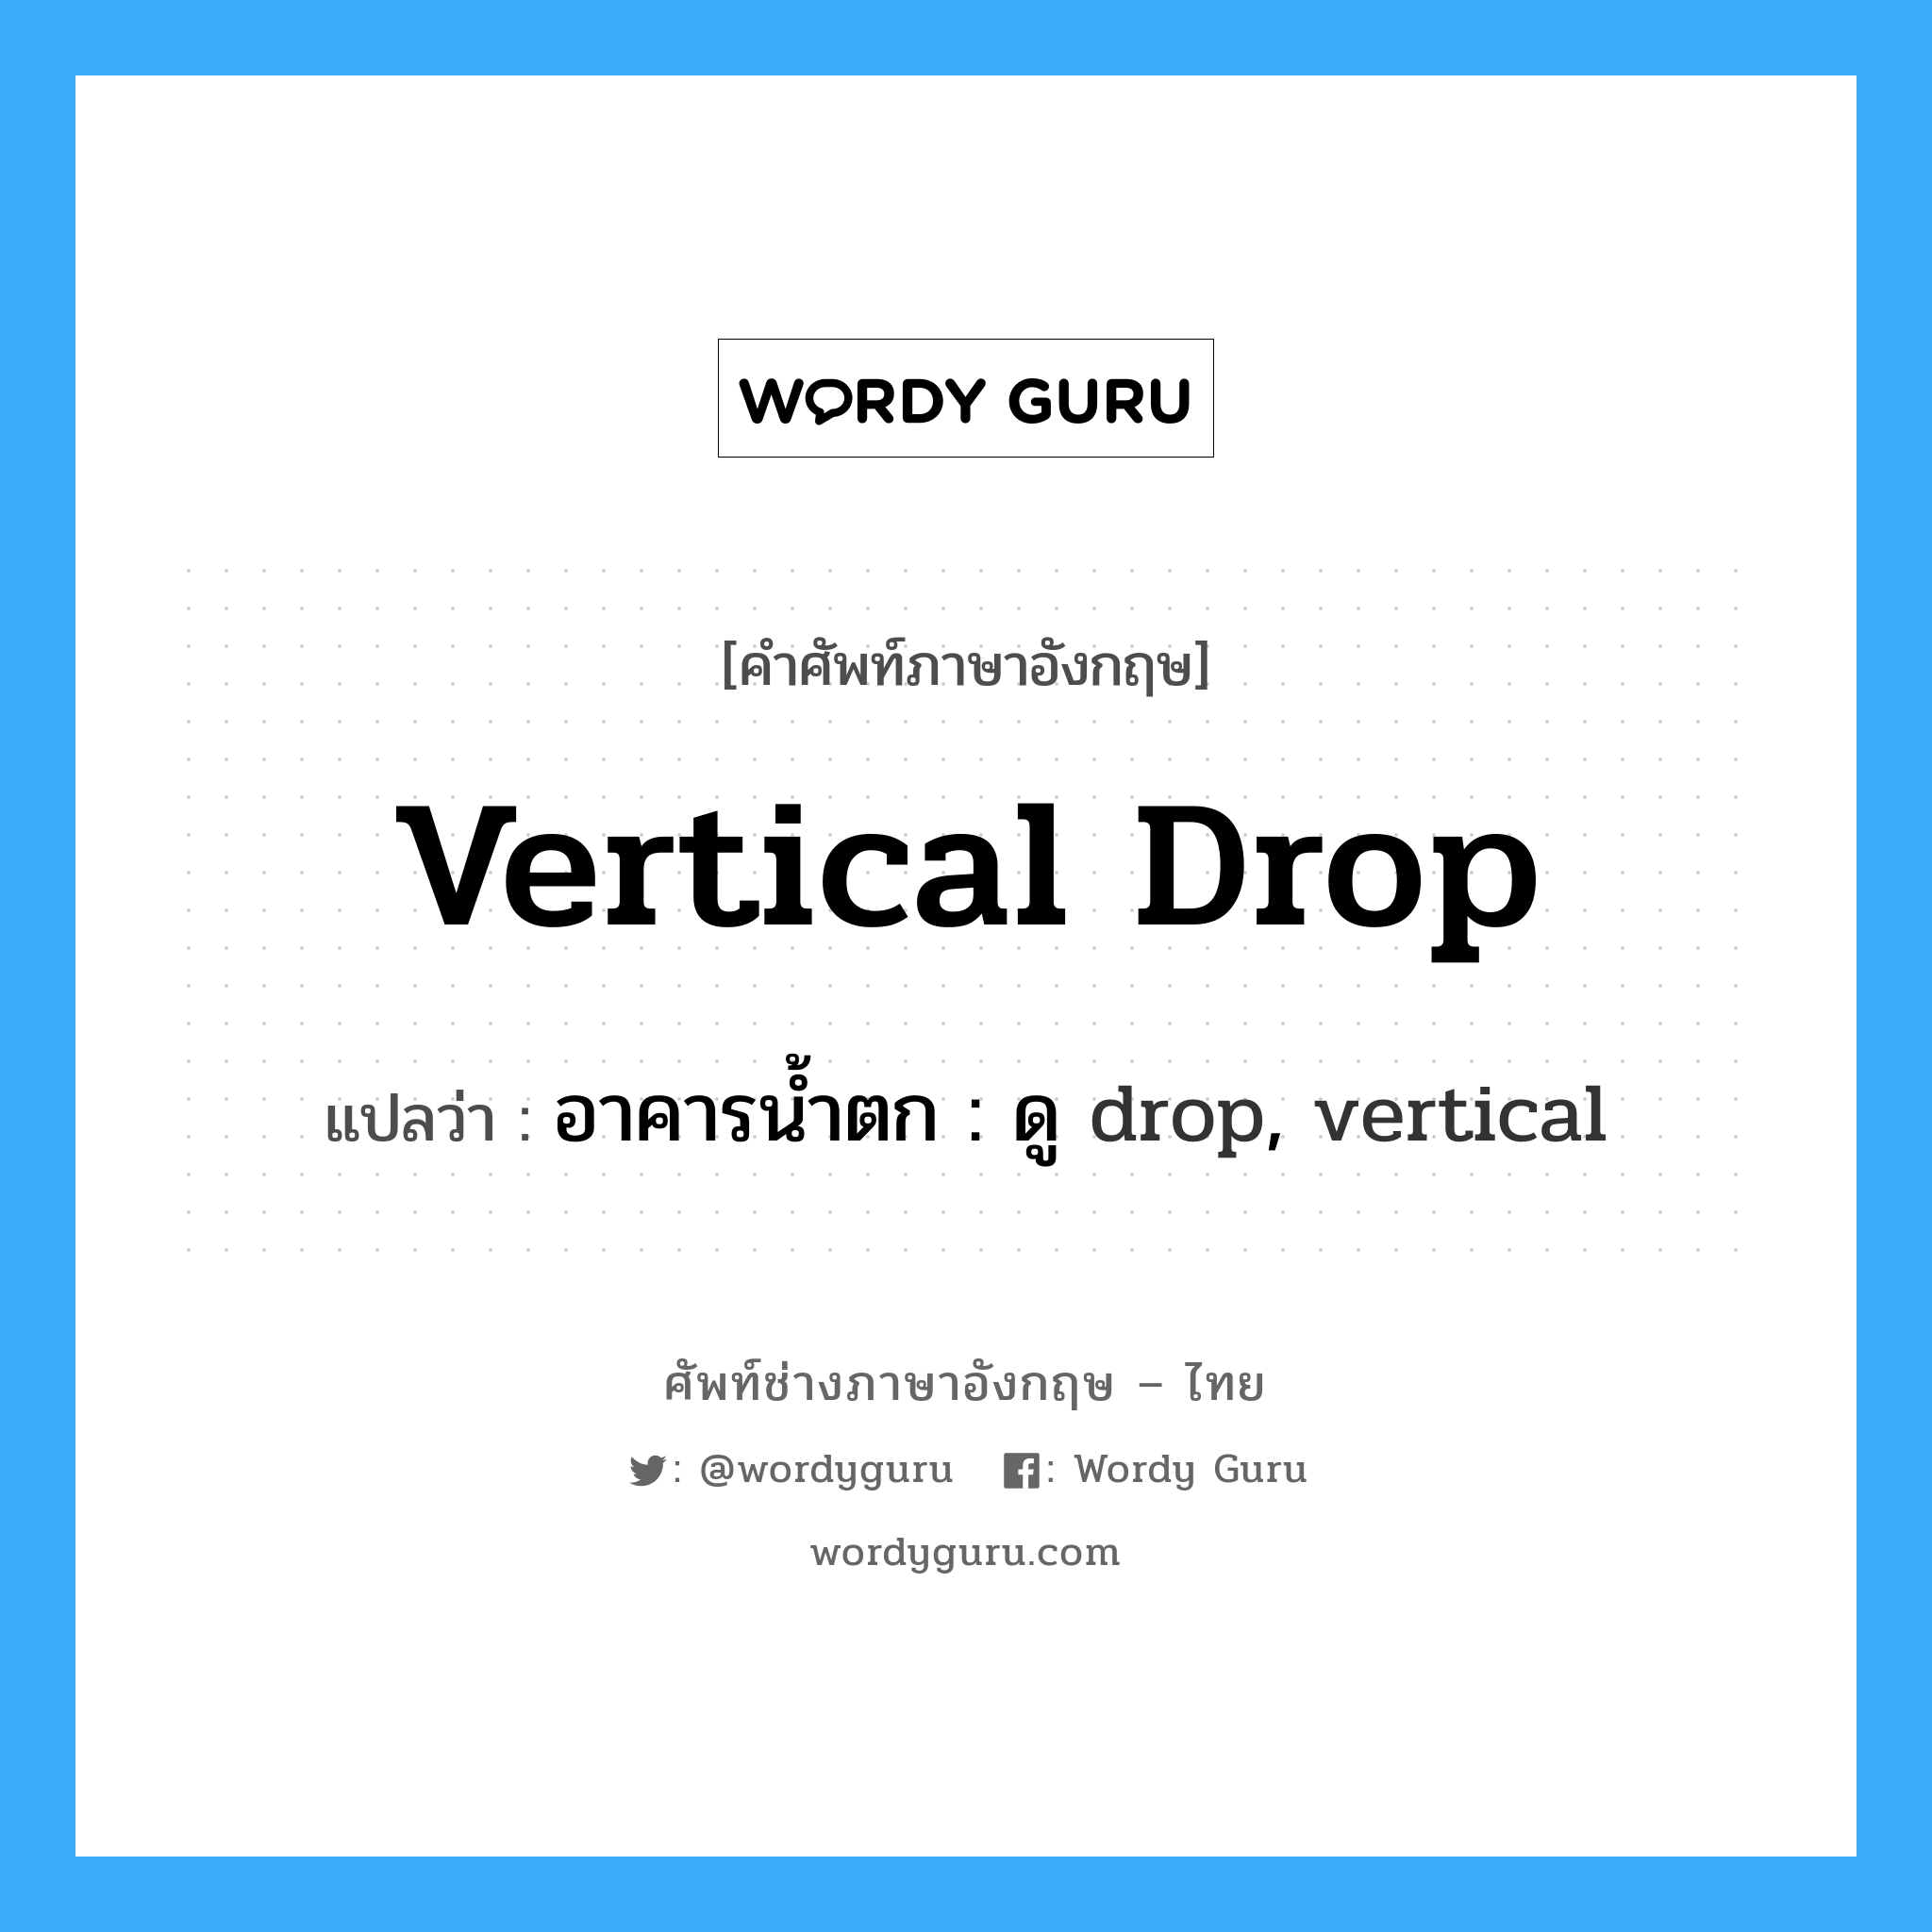 อาคารน้ำตก : ดู drop, vertical ภาษาอังกฤษ?, คำศัพท์ช่างภาษาอังกฤษ - ไทย อาคารน้ำตก : ดู drop, vertical คำศัพท์ภาษาอังกฤษ อาคารน้ำตก : ดู drop, vertical แปลว่า vertical drop